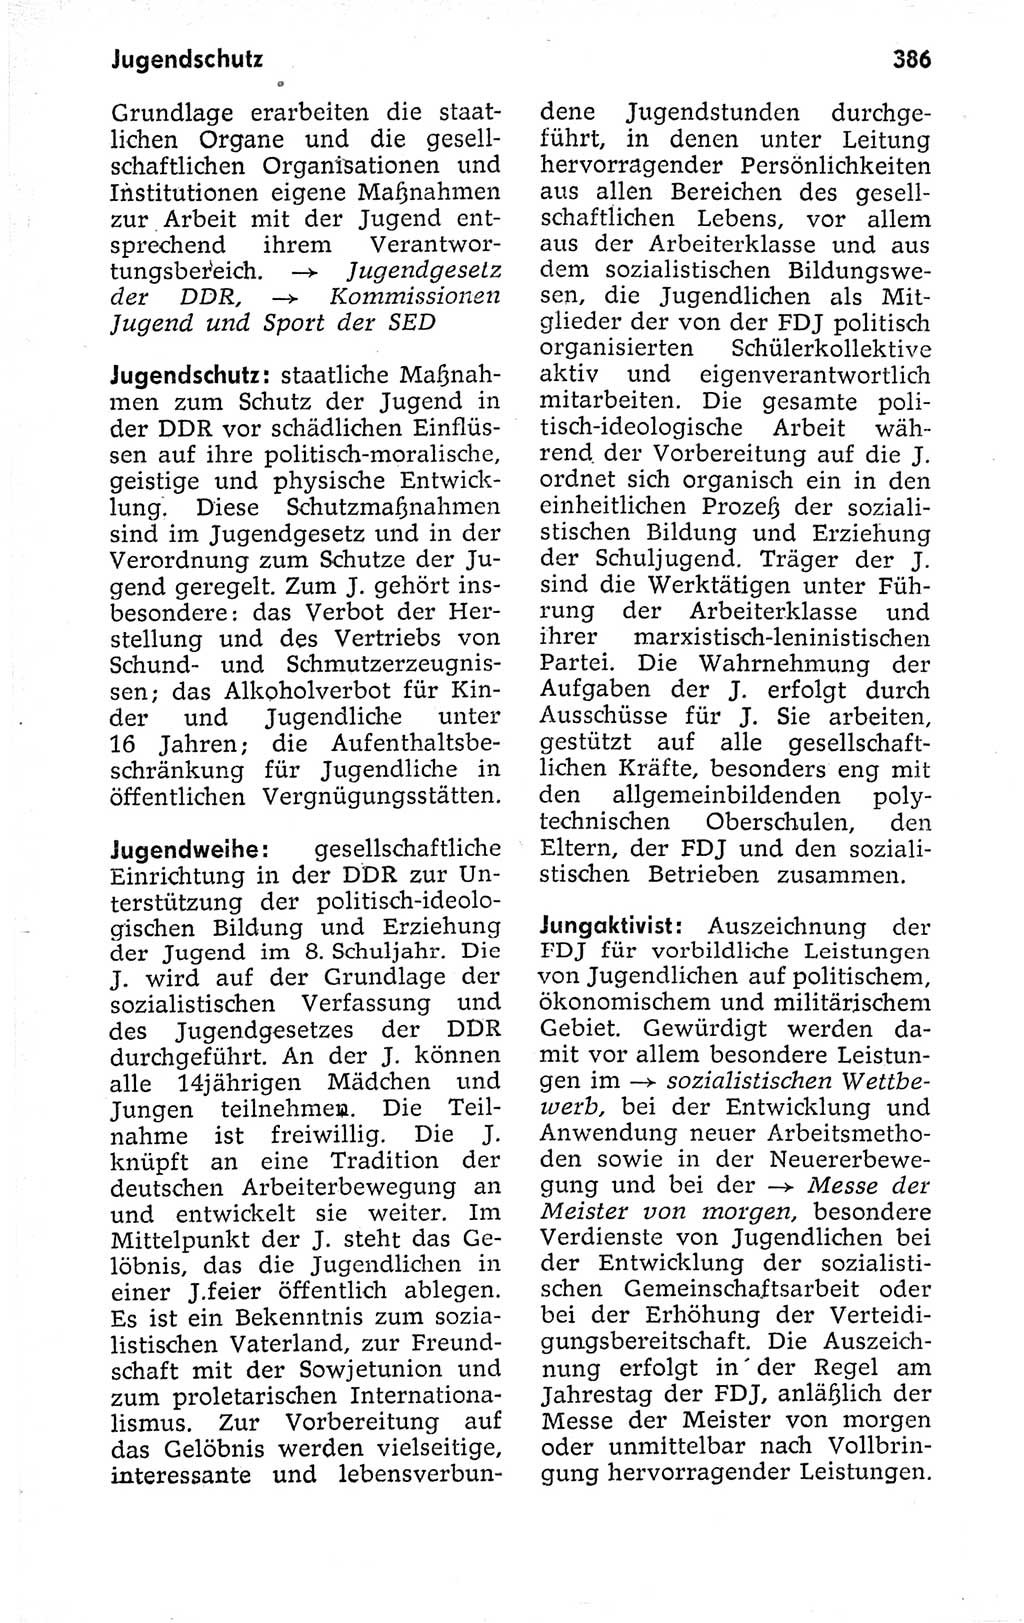 Kleines politisches Wörterbuch [Deutsche Demokratische Republik (DDR)] 1973, Seite 386 (Kl. pol. Wb. DDR 1973, S. 386)